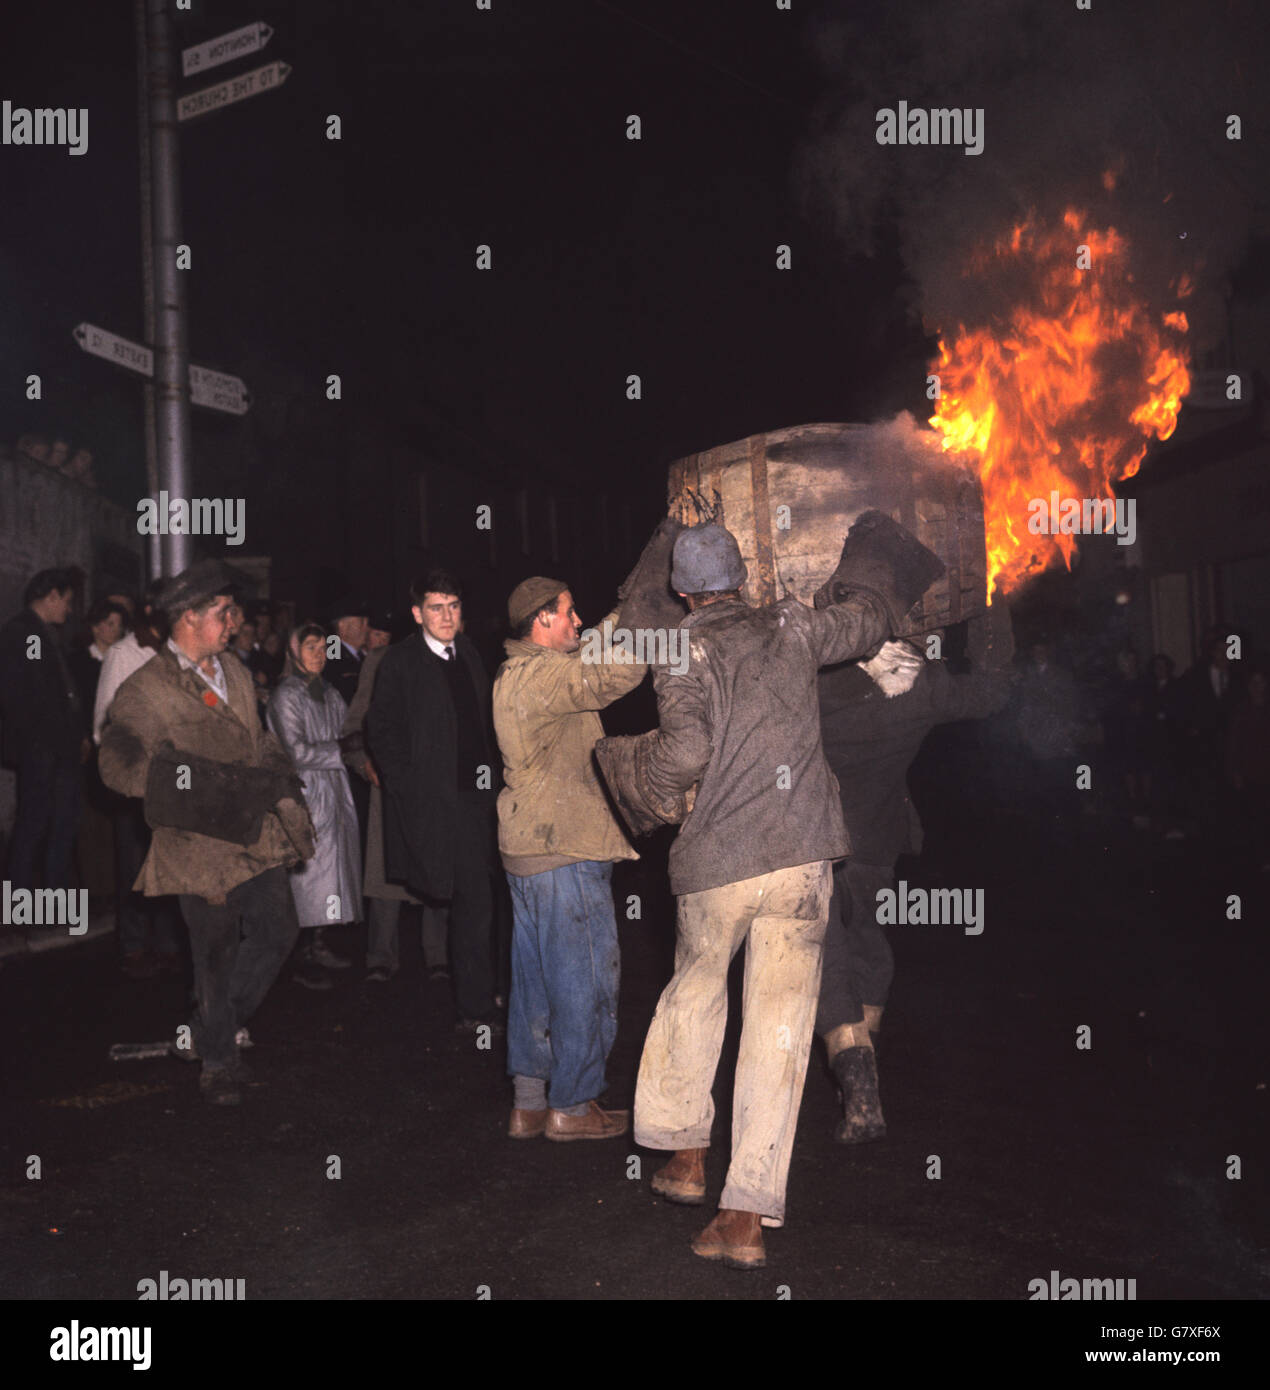 Männer tragen ein brennendes Fass durch die Straßen, während die Menschen darauf blicken. Stockfoto